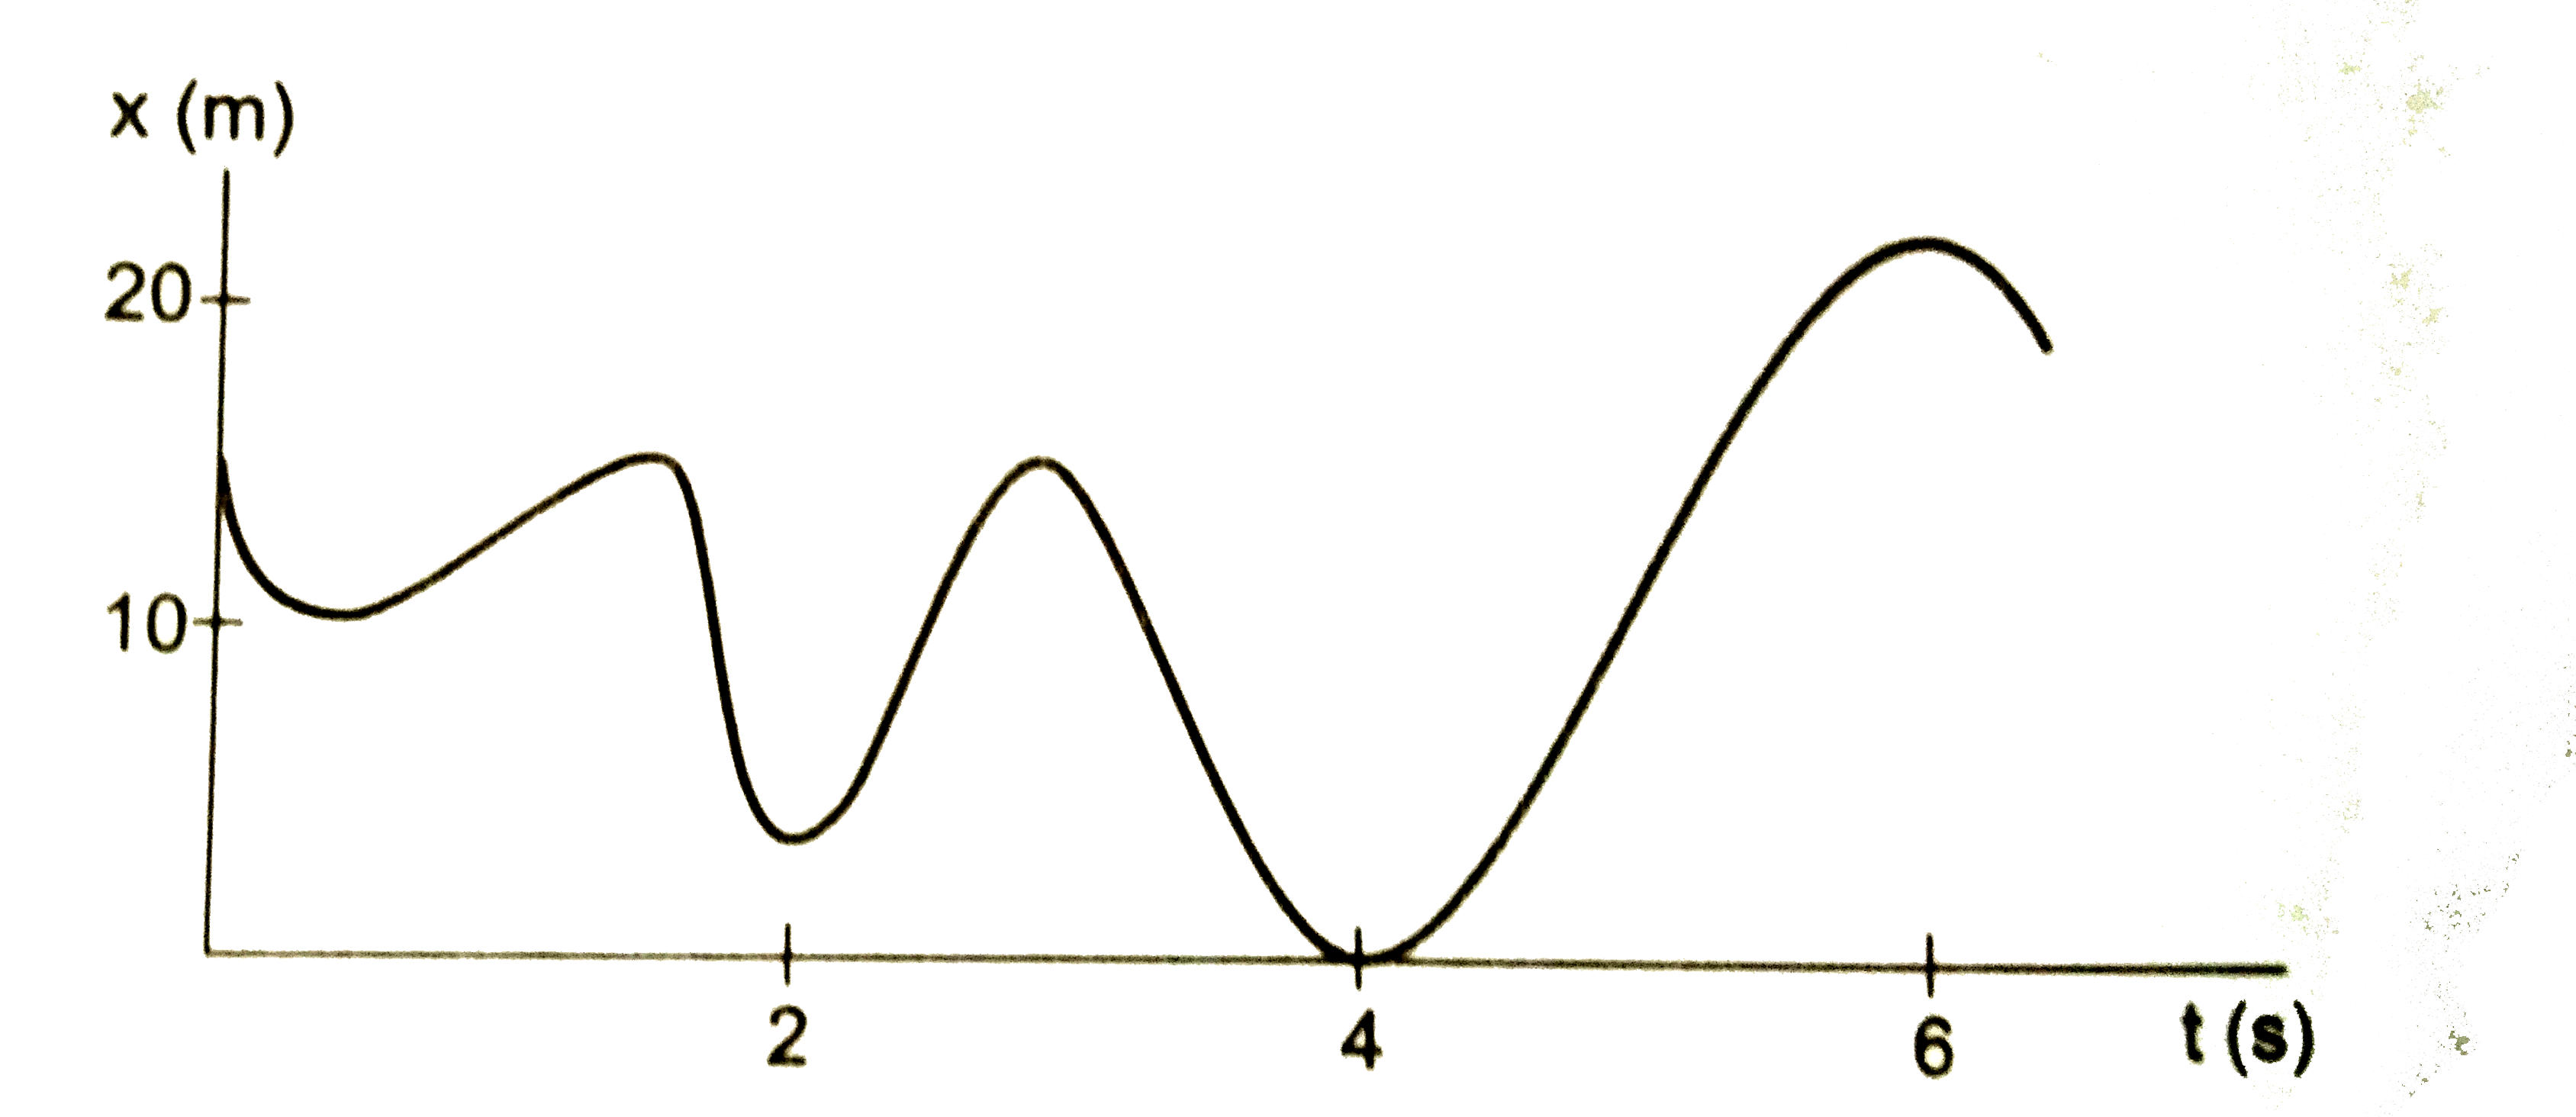 चित्र में x  - अक्ष  पर  चलते  हुए  एक  कण  का  स्थान  - समय  ग्राफ दिखाया  गया है | ग्राफ  बताता है कि